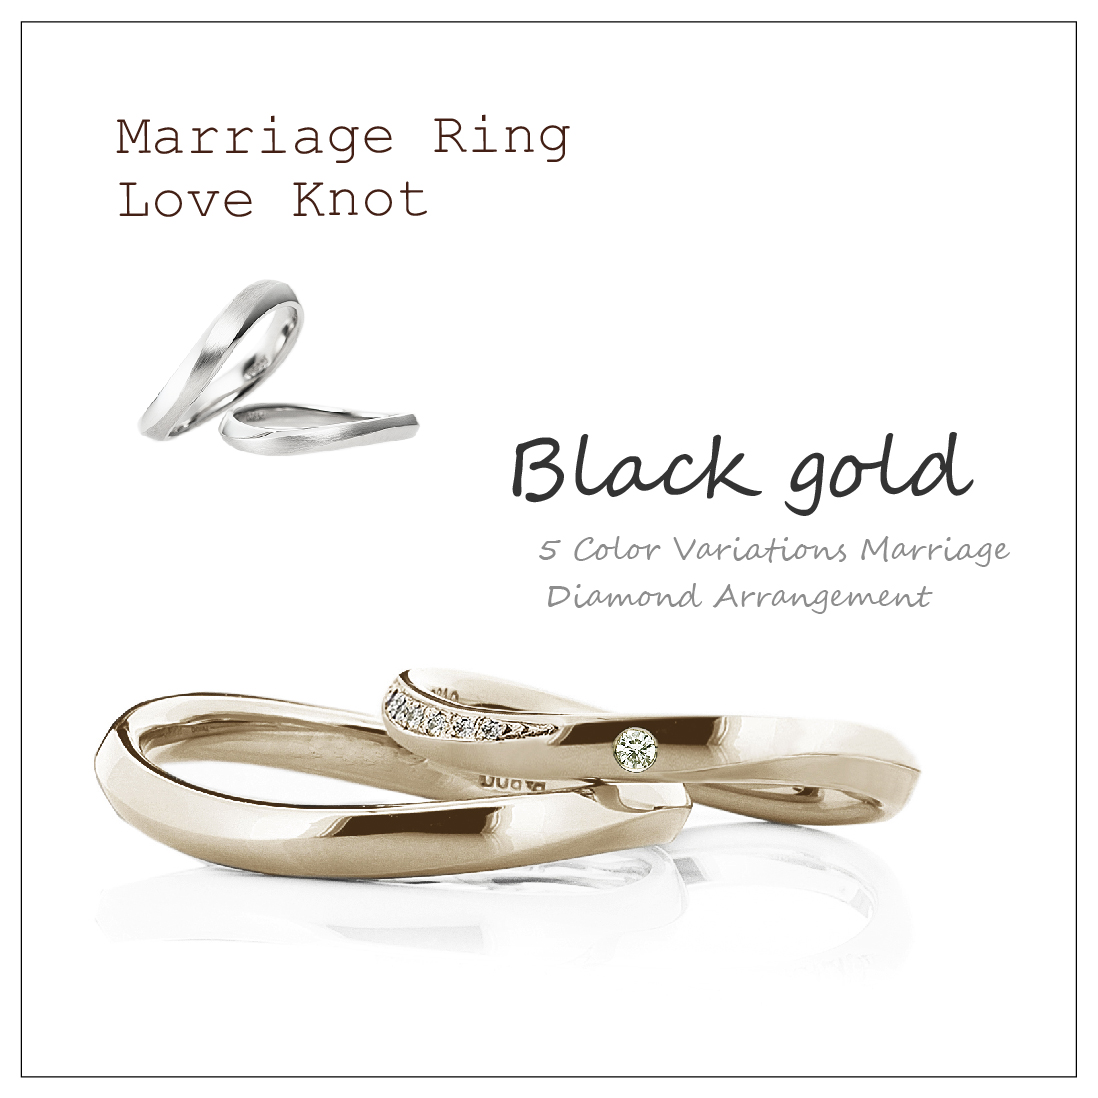 ウエーブのペアの結婚指輪です。2本ともプラチナよりも深い色味のブラックゴールドです。レディースは真ん中に1ピース、サイド面にメレダイヤを並べています。